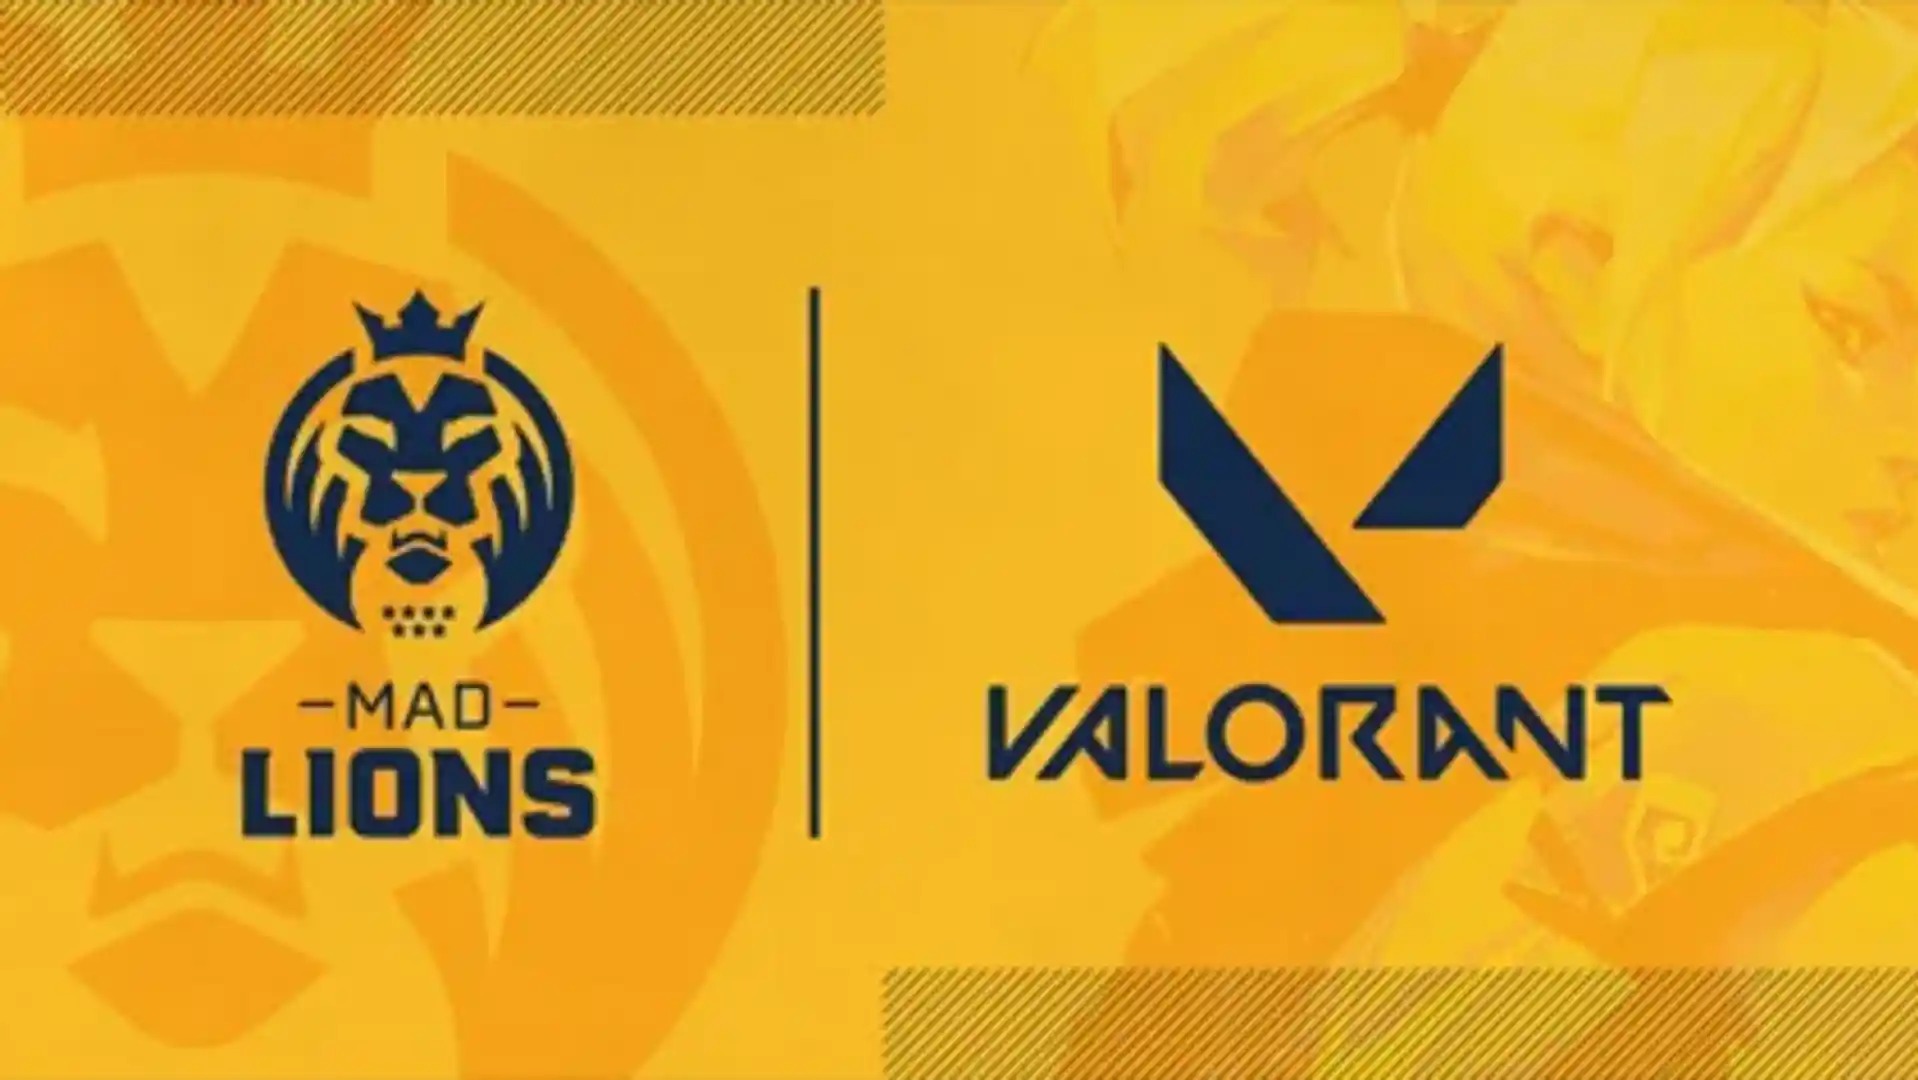 Mad Lions chiêu mộ toàn bộ đội hình của một đội tuyển Valorant Challengers khu vực Bắc Mỹ trước thềm mùa giải 2023